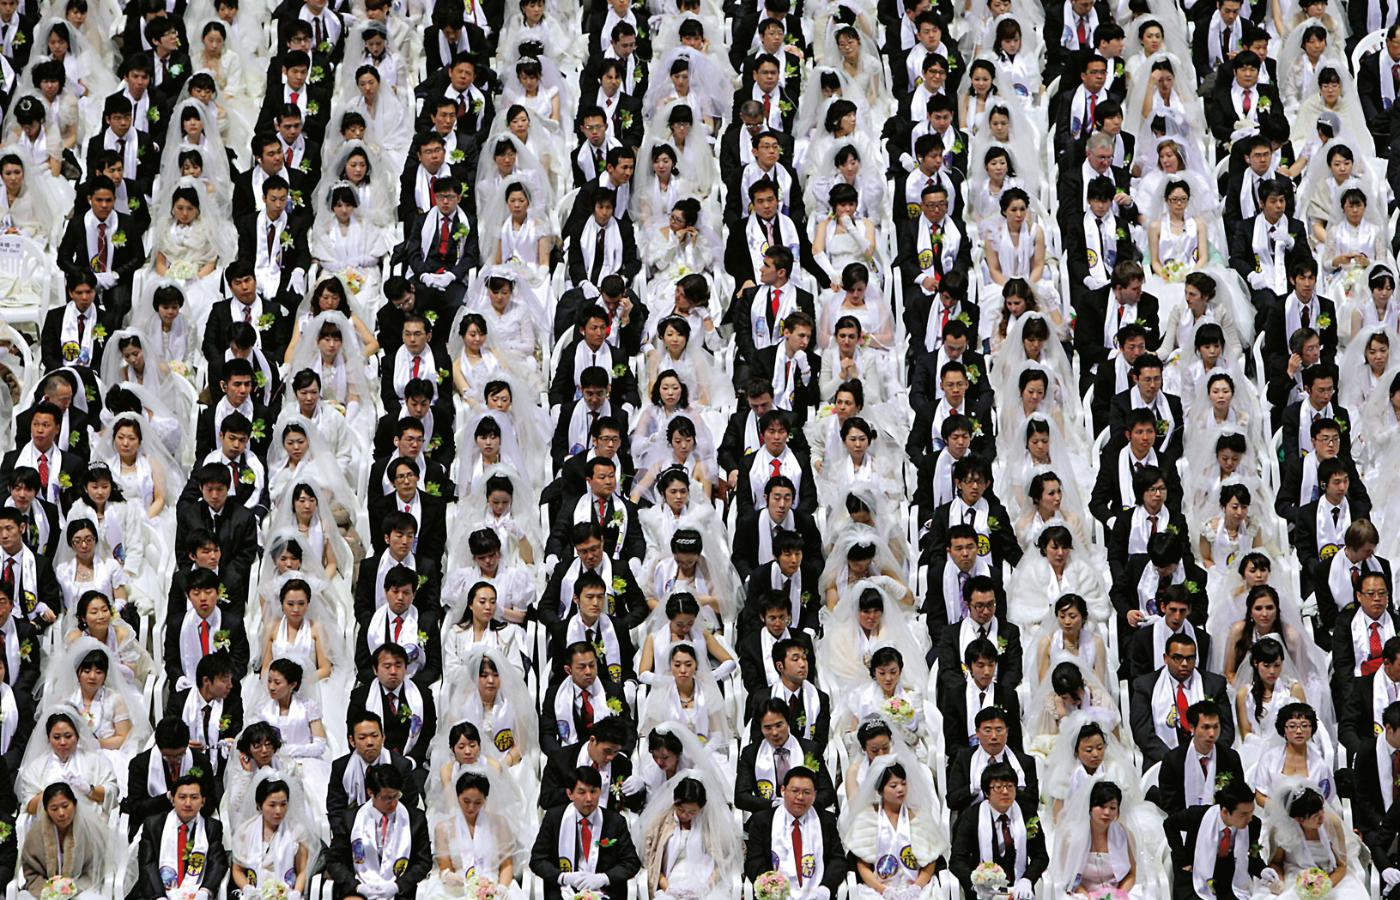 Kościół Zjednoczeniowy zasłynął z masowych błogosławieństw par. Na fot.: ceremonia w Światowym Centrum Pokoju Cheongshim.